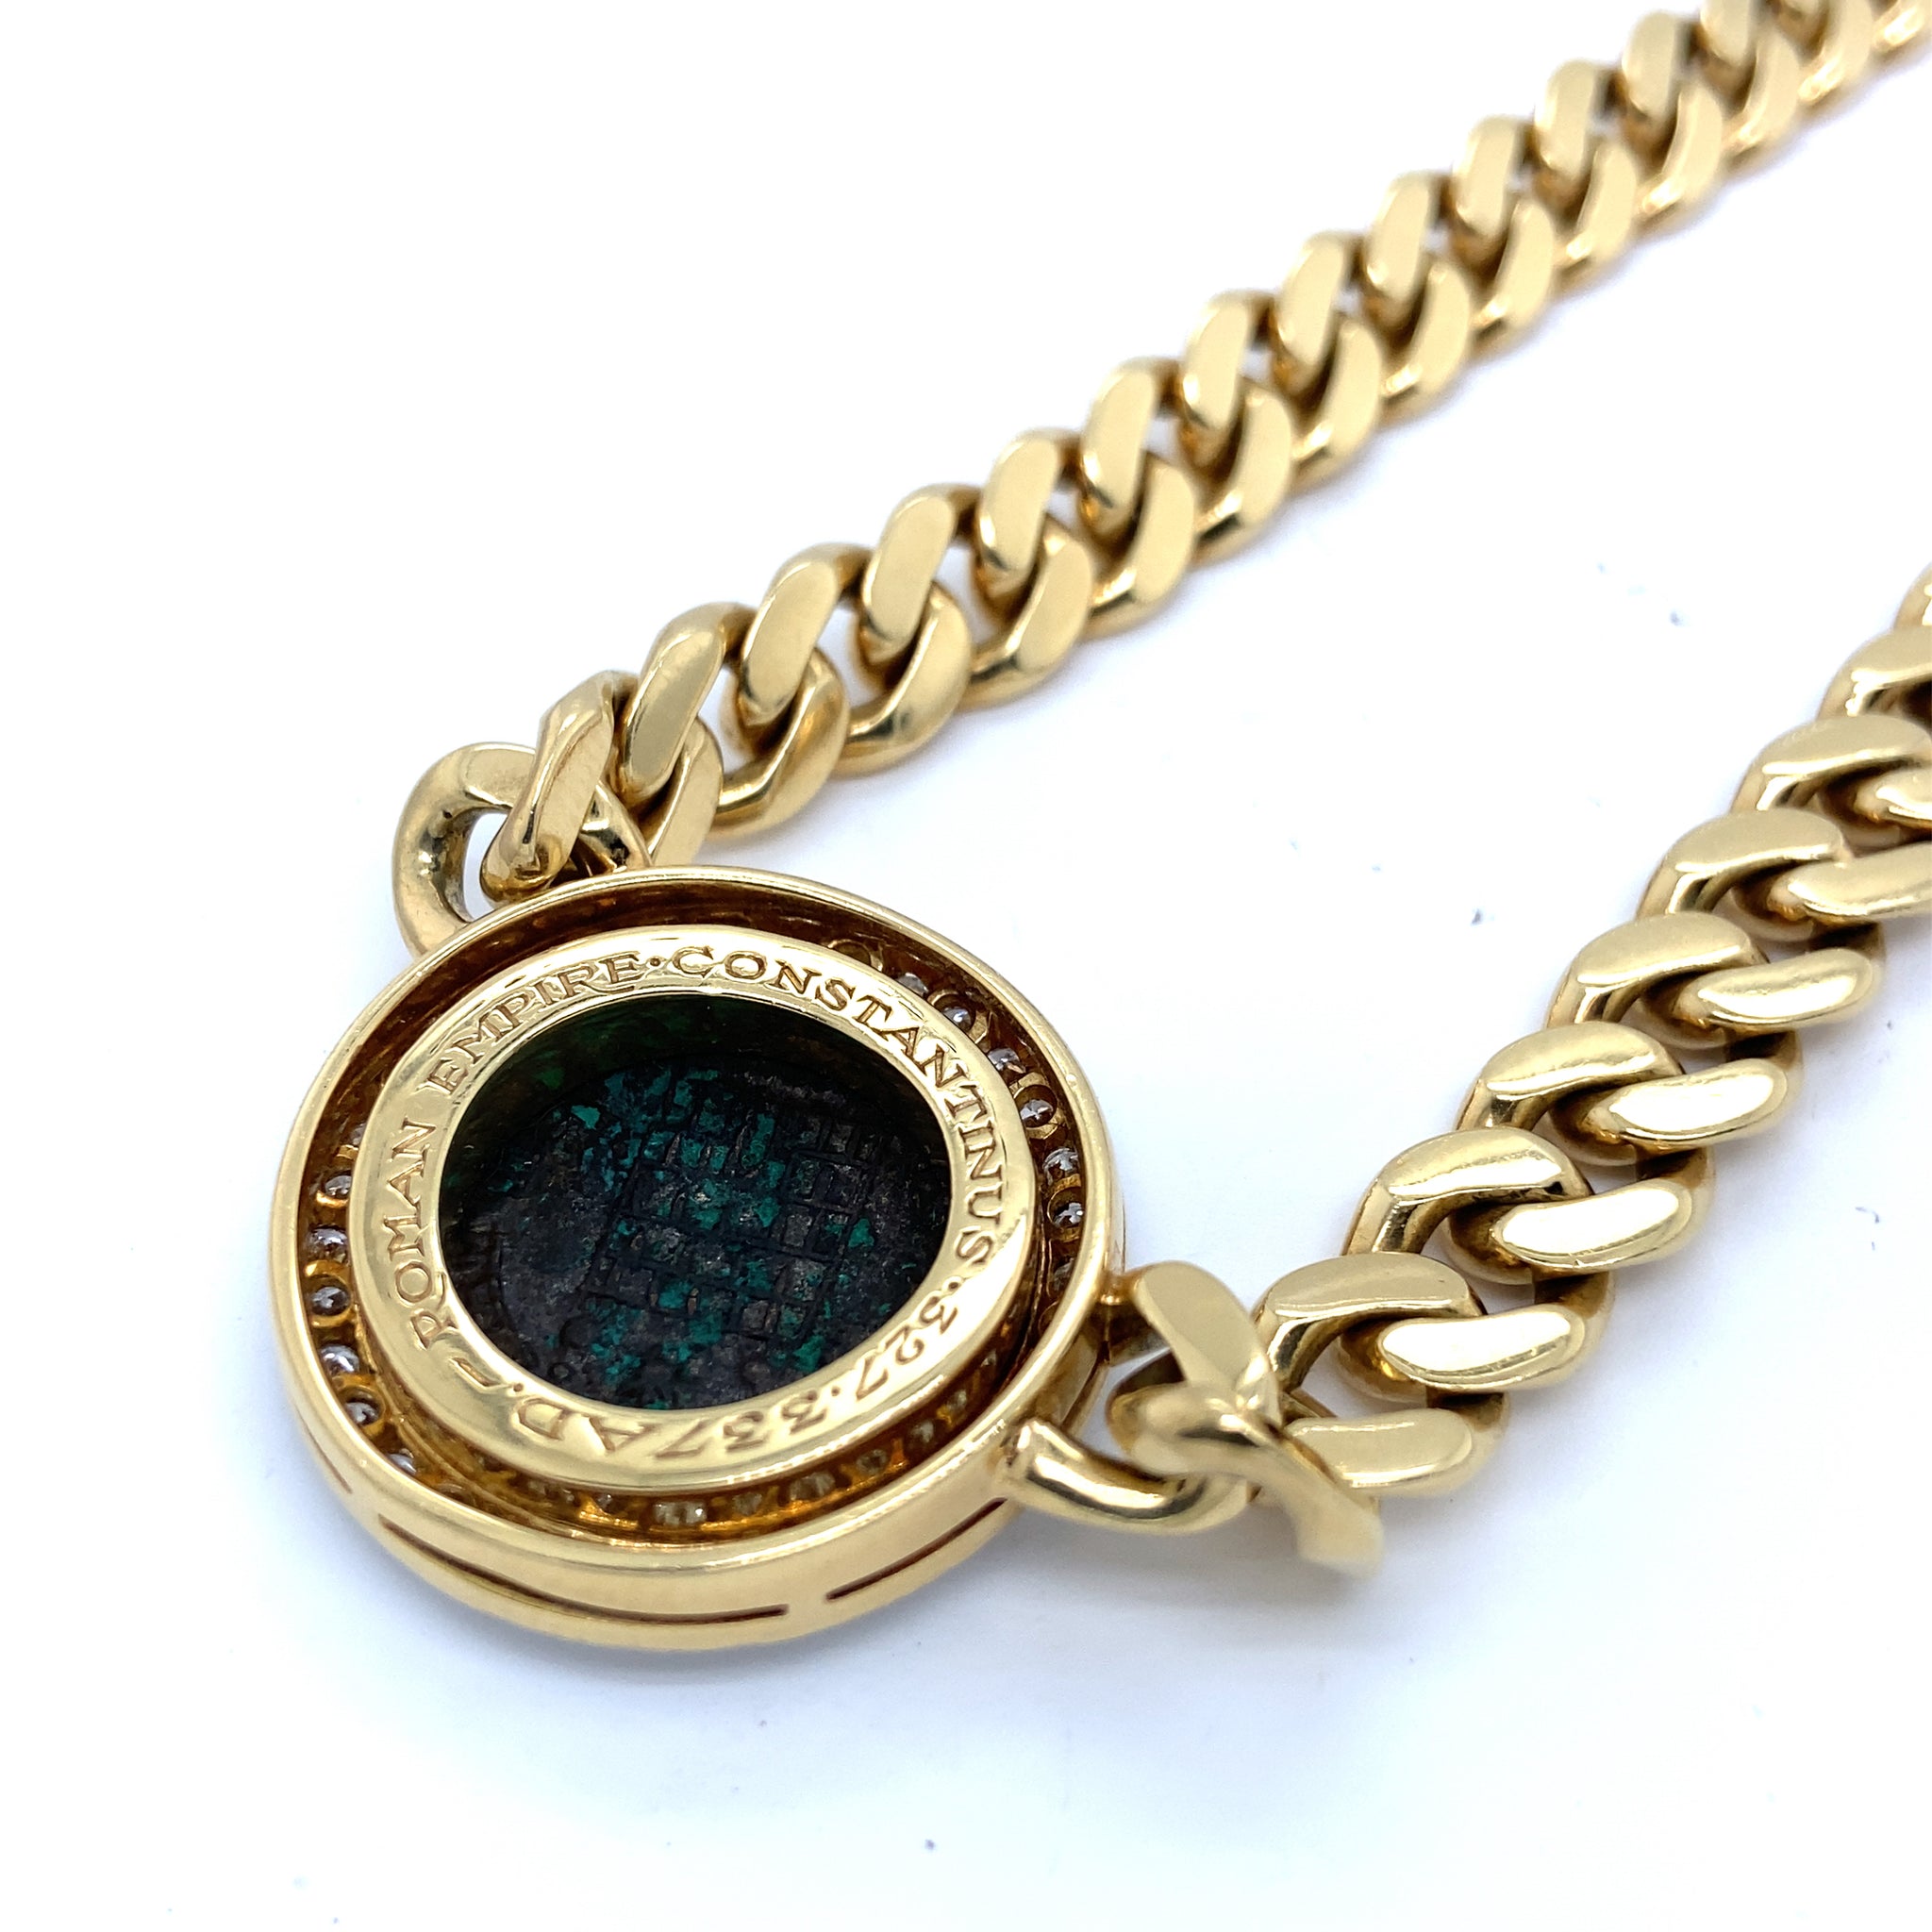 Bulgari, Monete, choker necklace set with an antique 